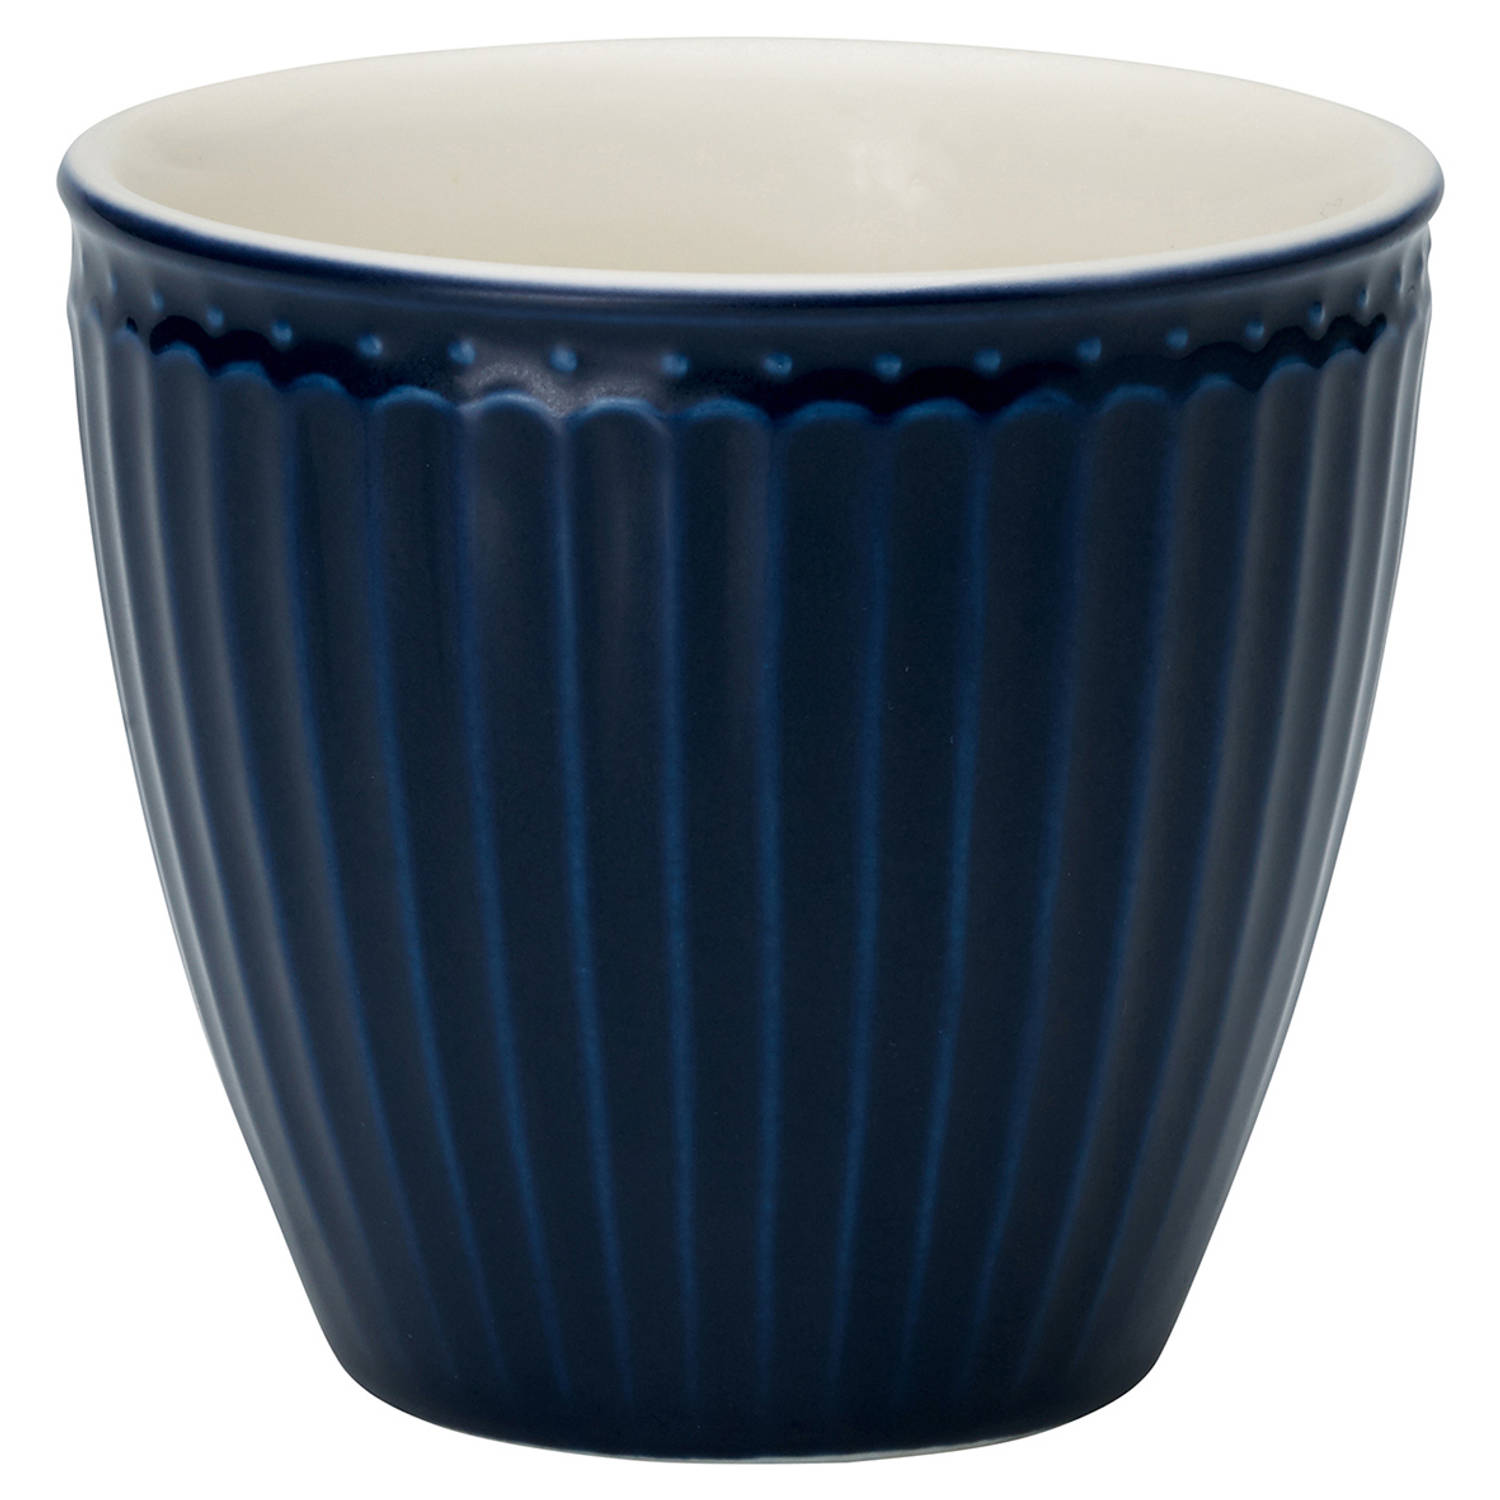 Set van 6x Stuks Beker (latte cup) GreenGate Alice donkerblauw 300 ml - Ø 10 cm